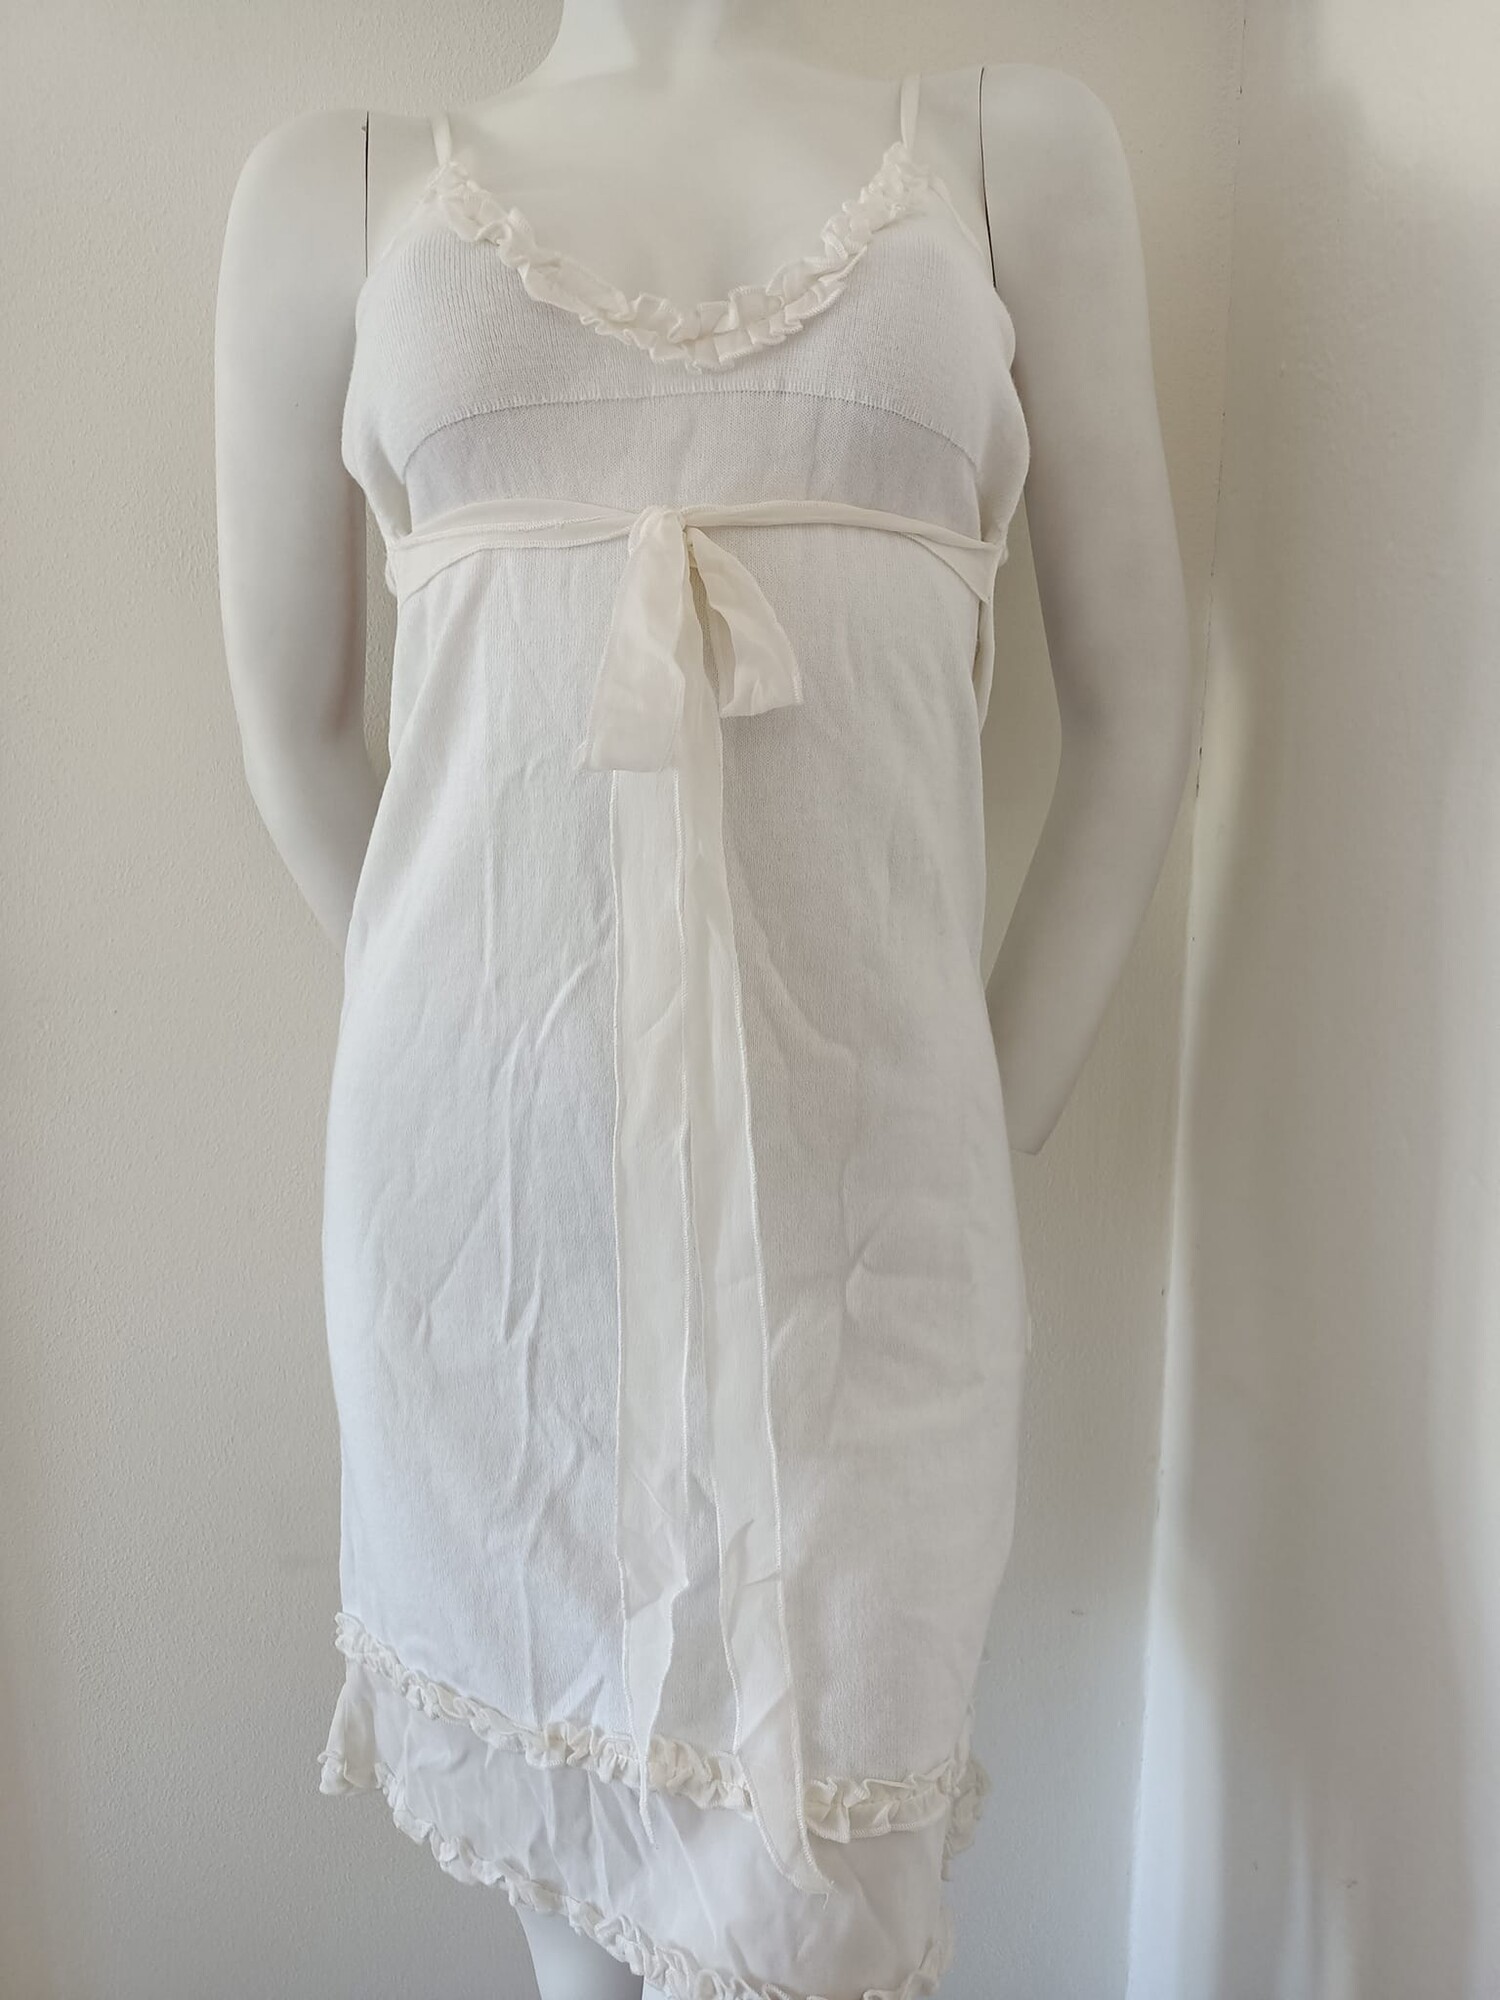 Dámské šaty LVL0454 bílé - Valery M